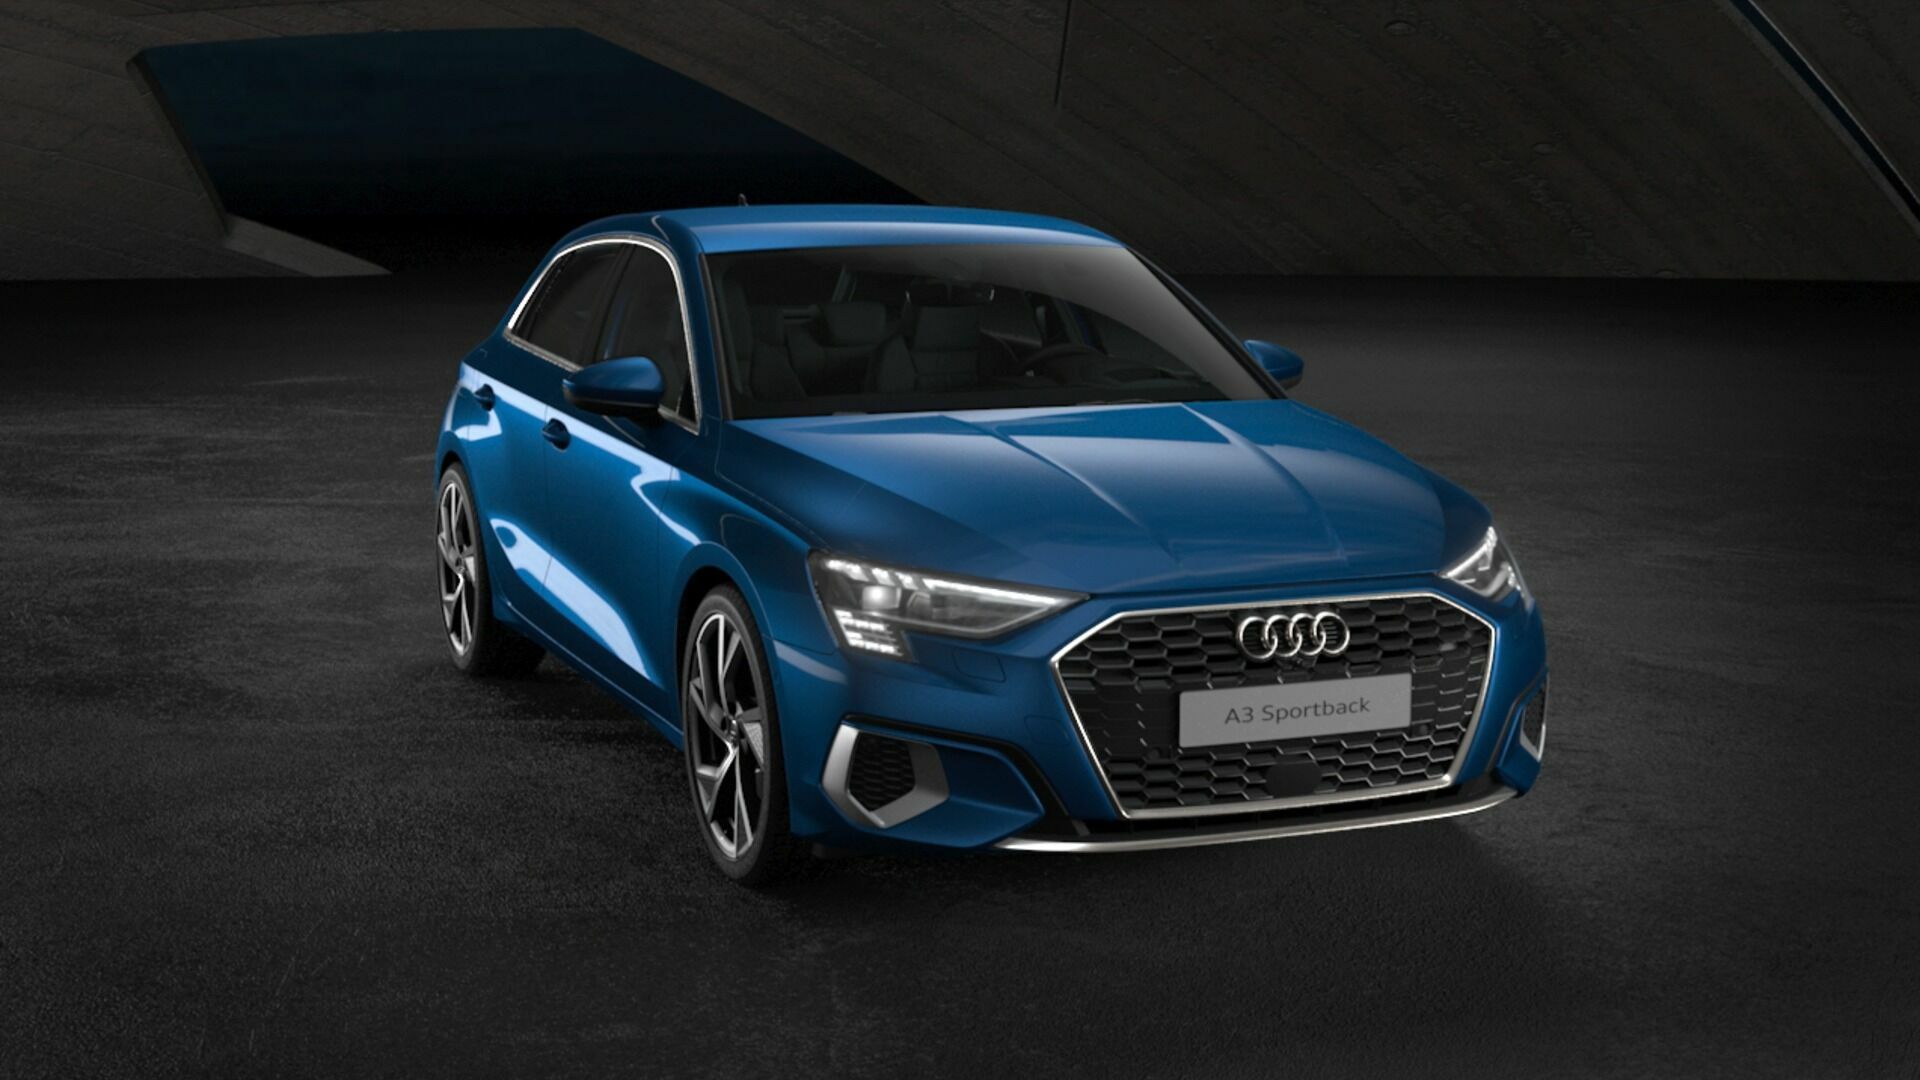 Animation: Audi A3 Sportback – Design